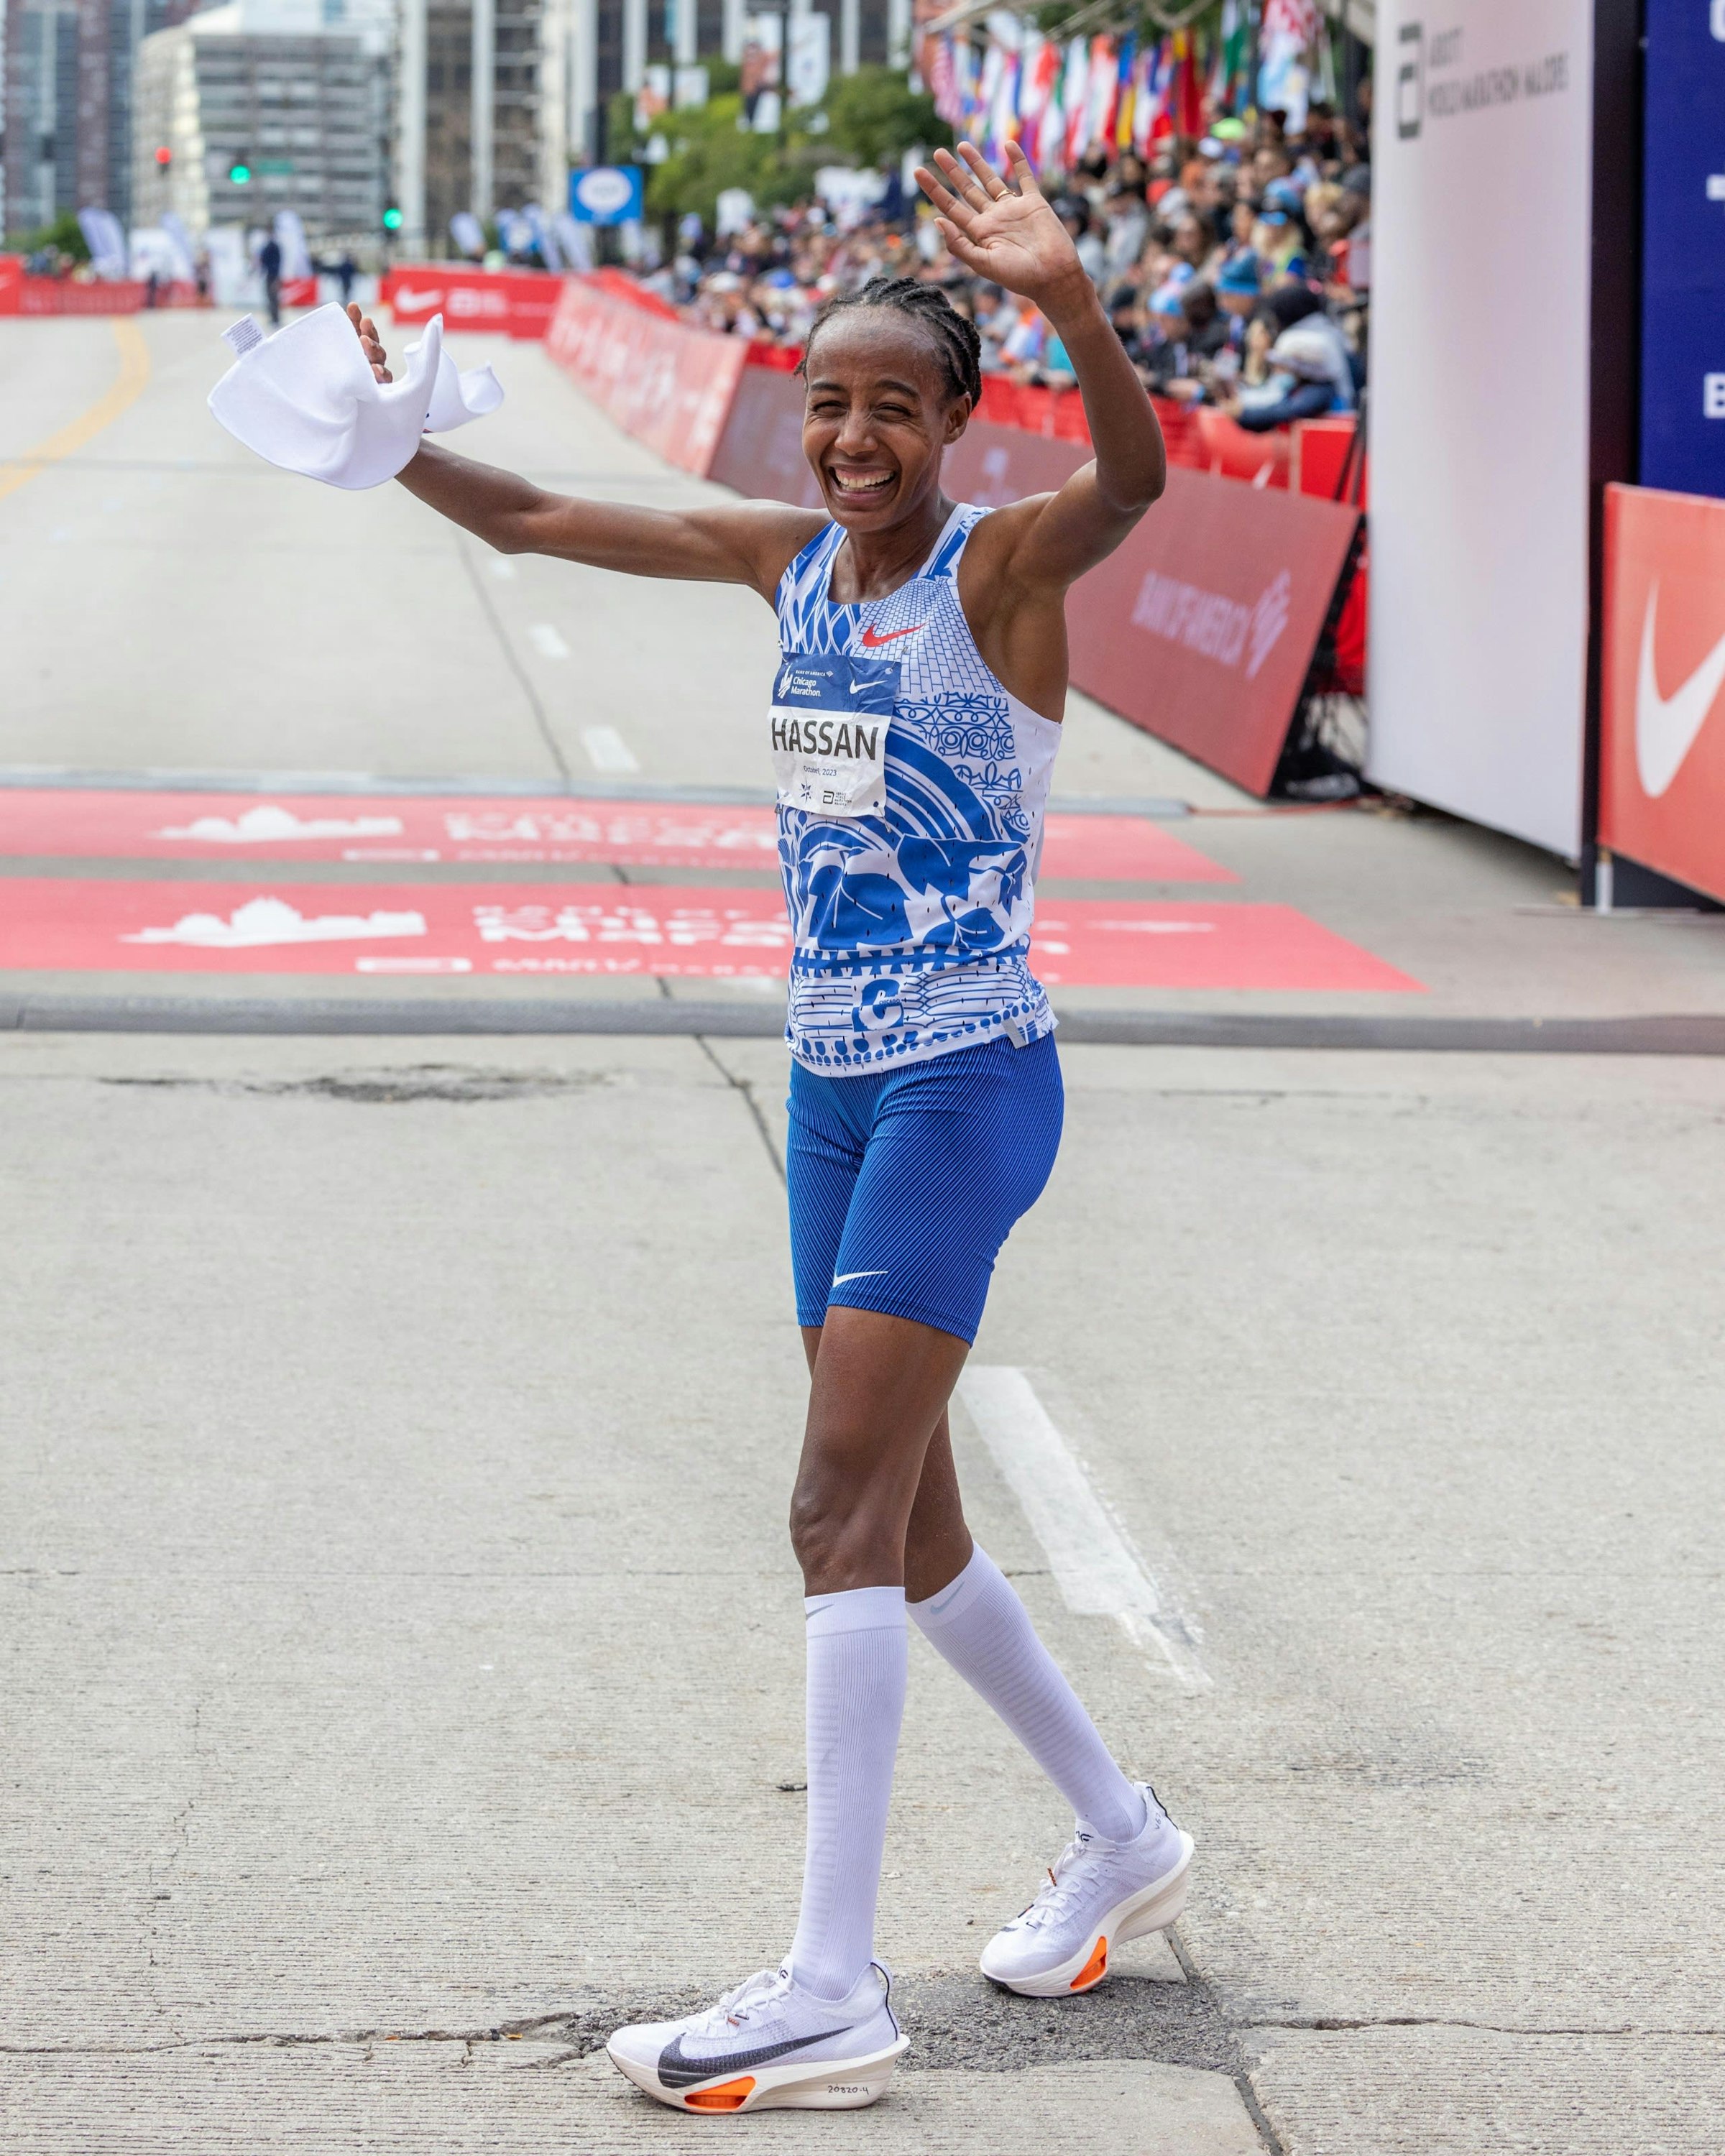 昨年10月のシカゴマラソンで女子マラソンの世界歴代2位となる2時間13分44秒をマークしたハッサン選手